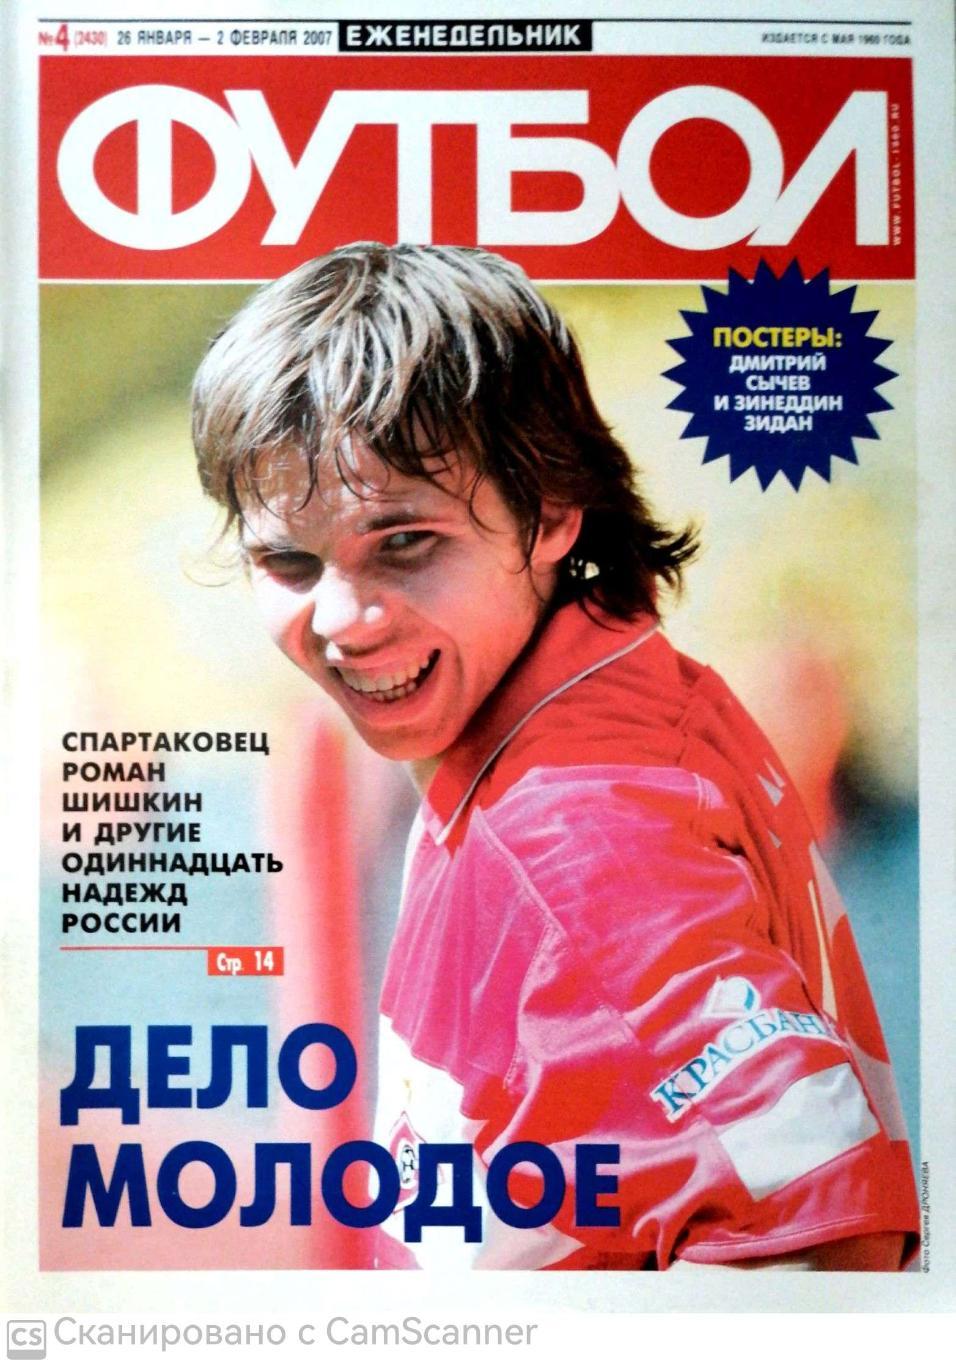 Еженедельник «Футбол» (Москва). 2007 год. №4 постер сычев, зидан